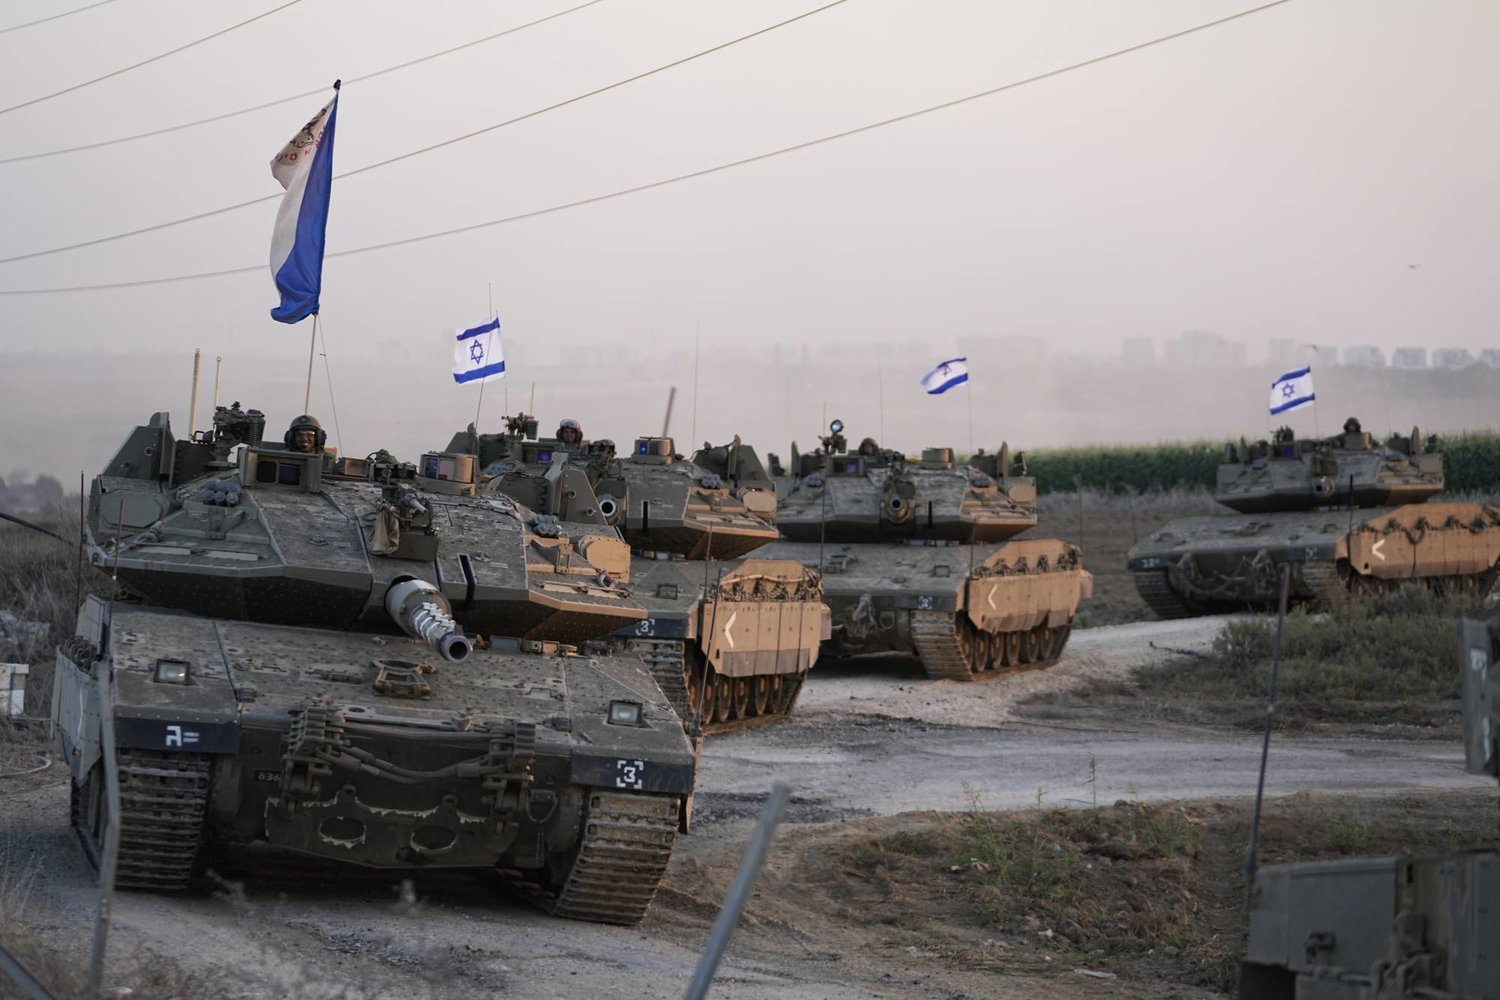 Israeli military ordered the evacuation